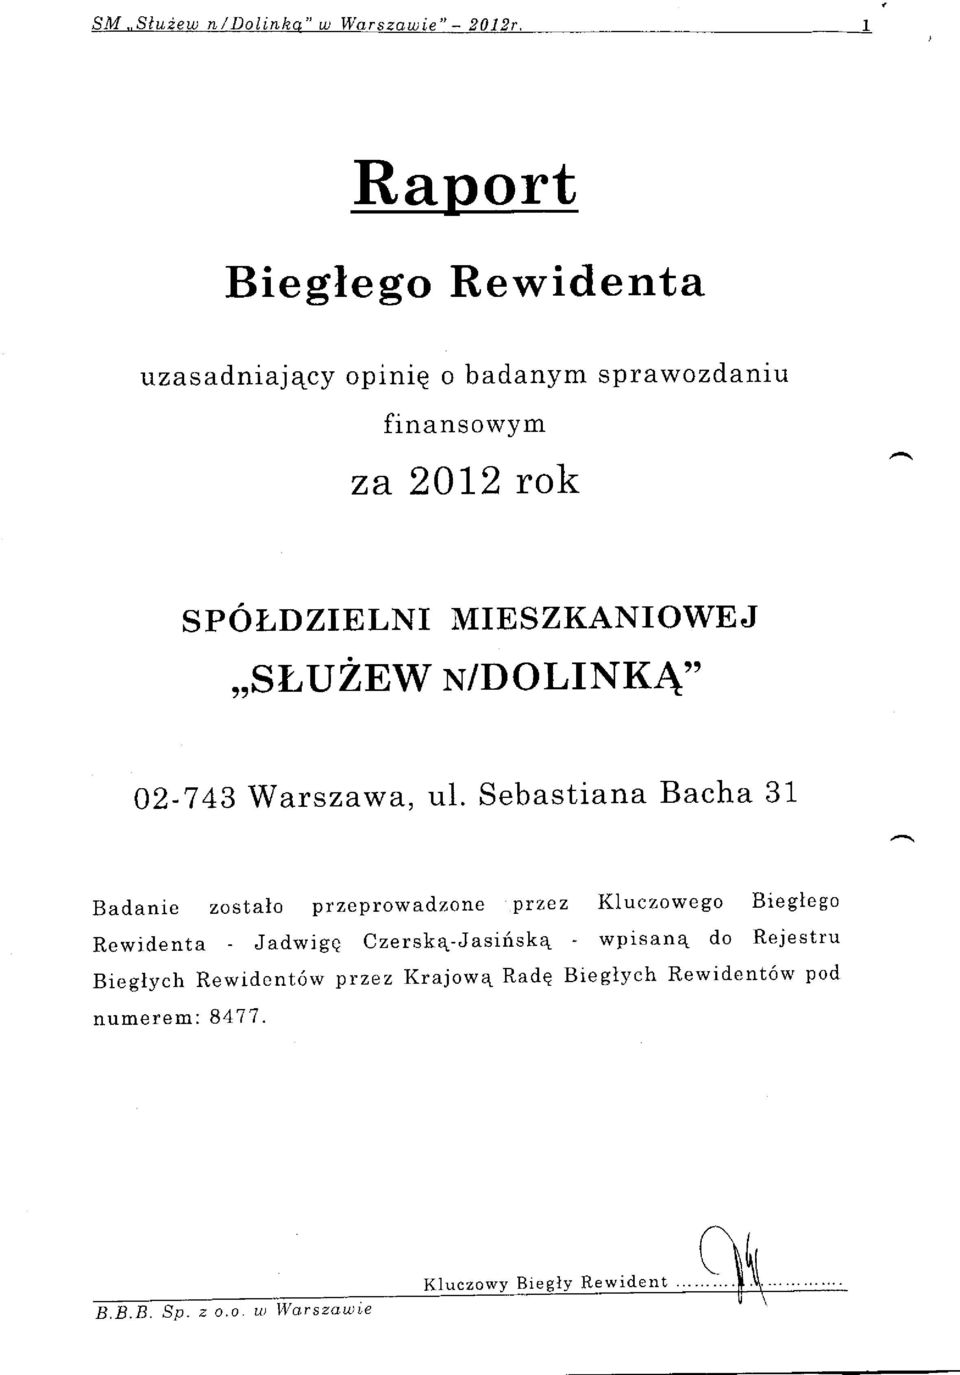 MIESZKANIOWE J,,SN'TJ ZEW N/D O LI NK,T,, 02-743 Warszawa, ul.